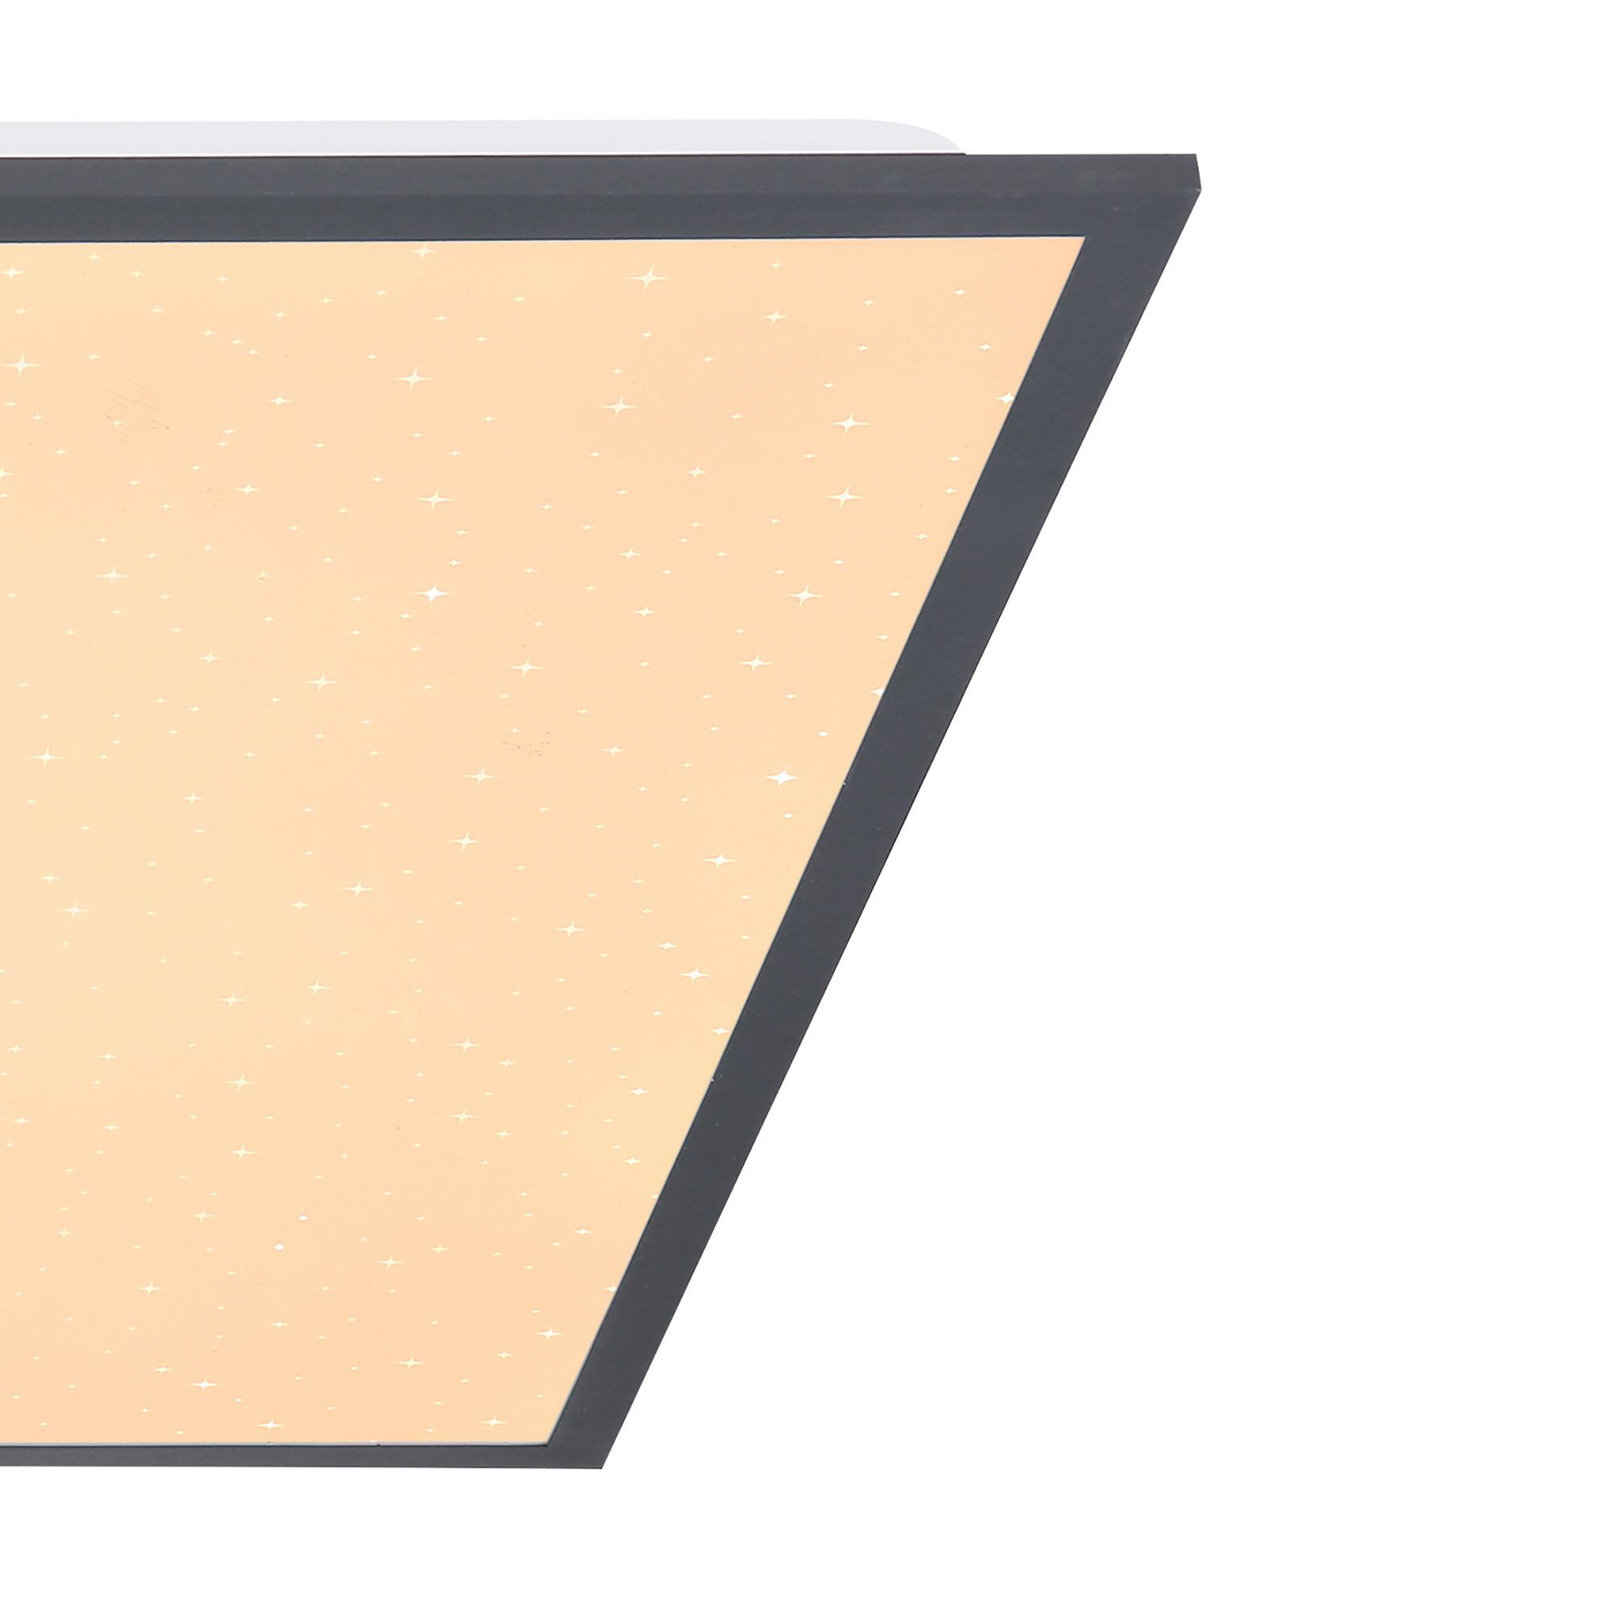 Stropné svietidlo Doro LED, dĺžka 59 cm, biela/grafit, hliník